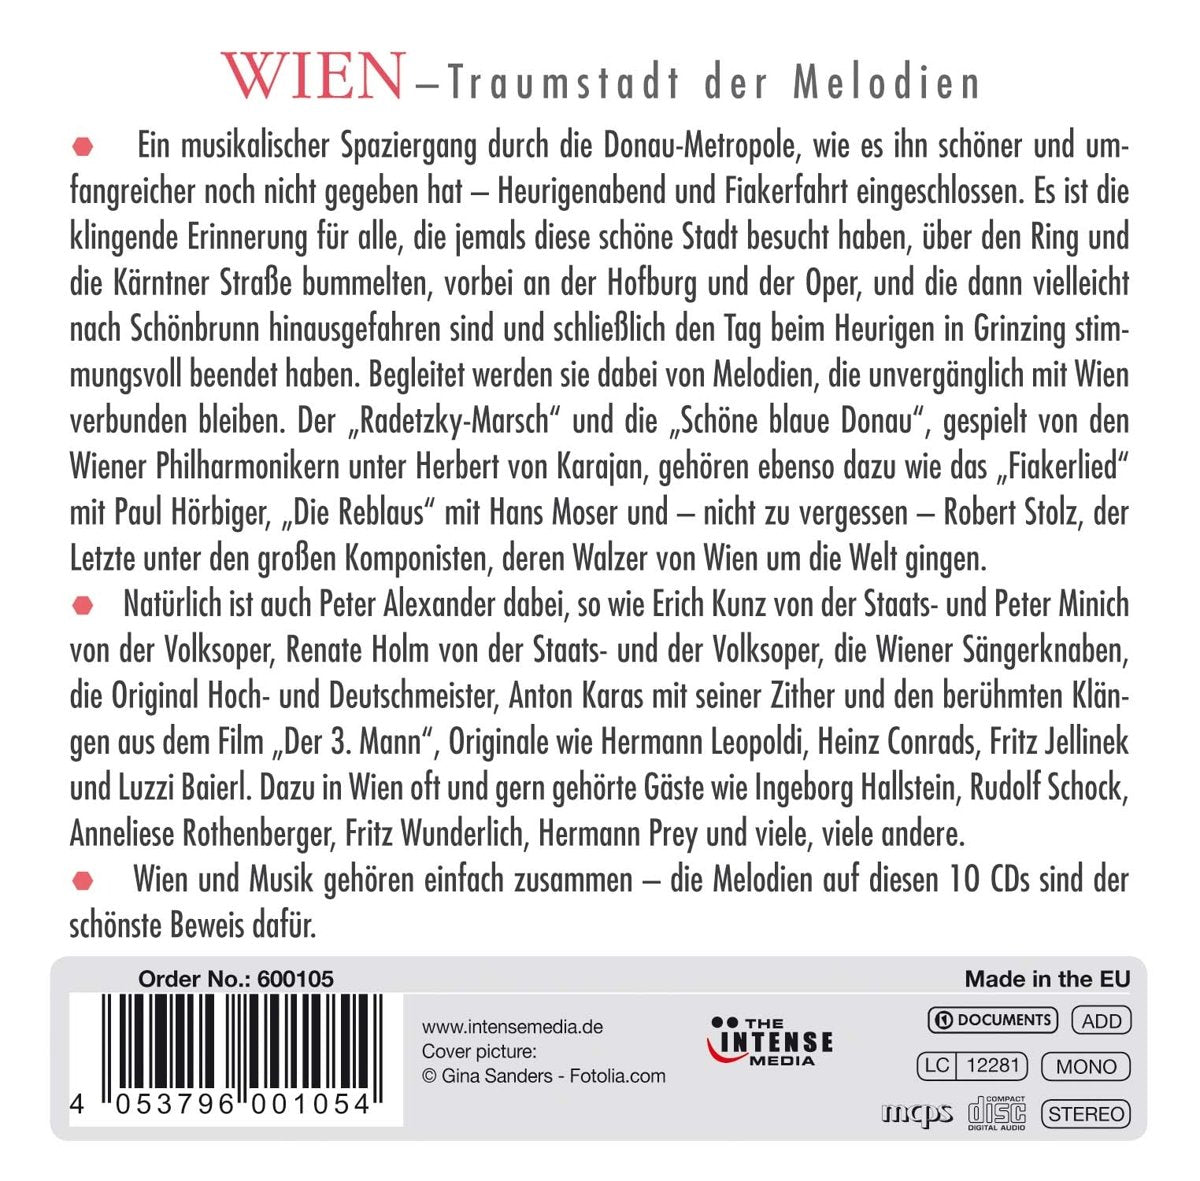 WIEN: A Musical Souvenir from Vienna (10 CDs)